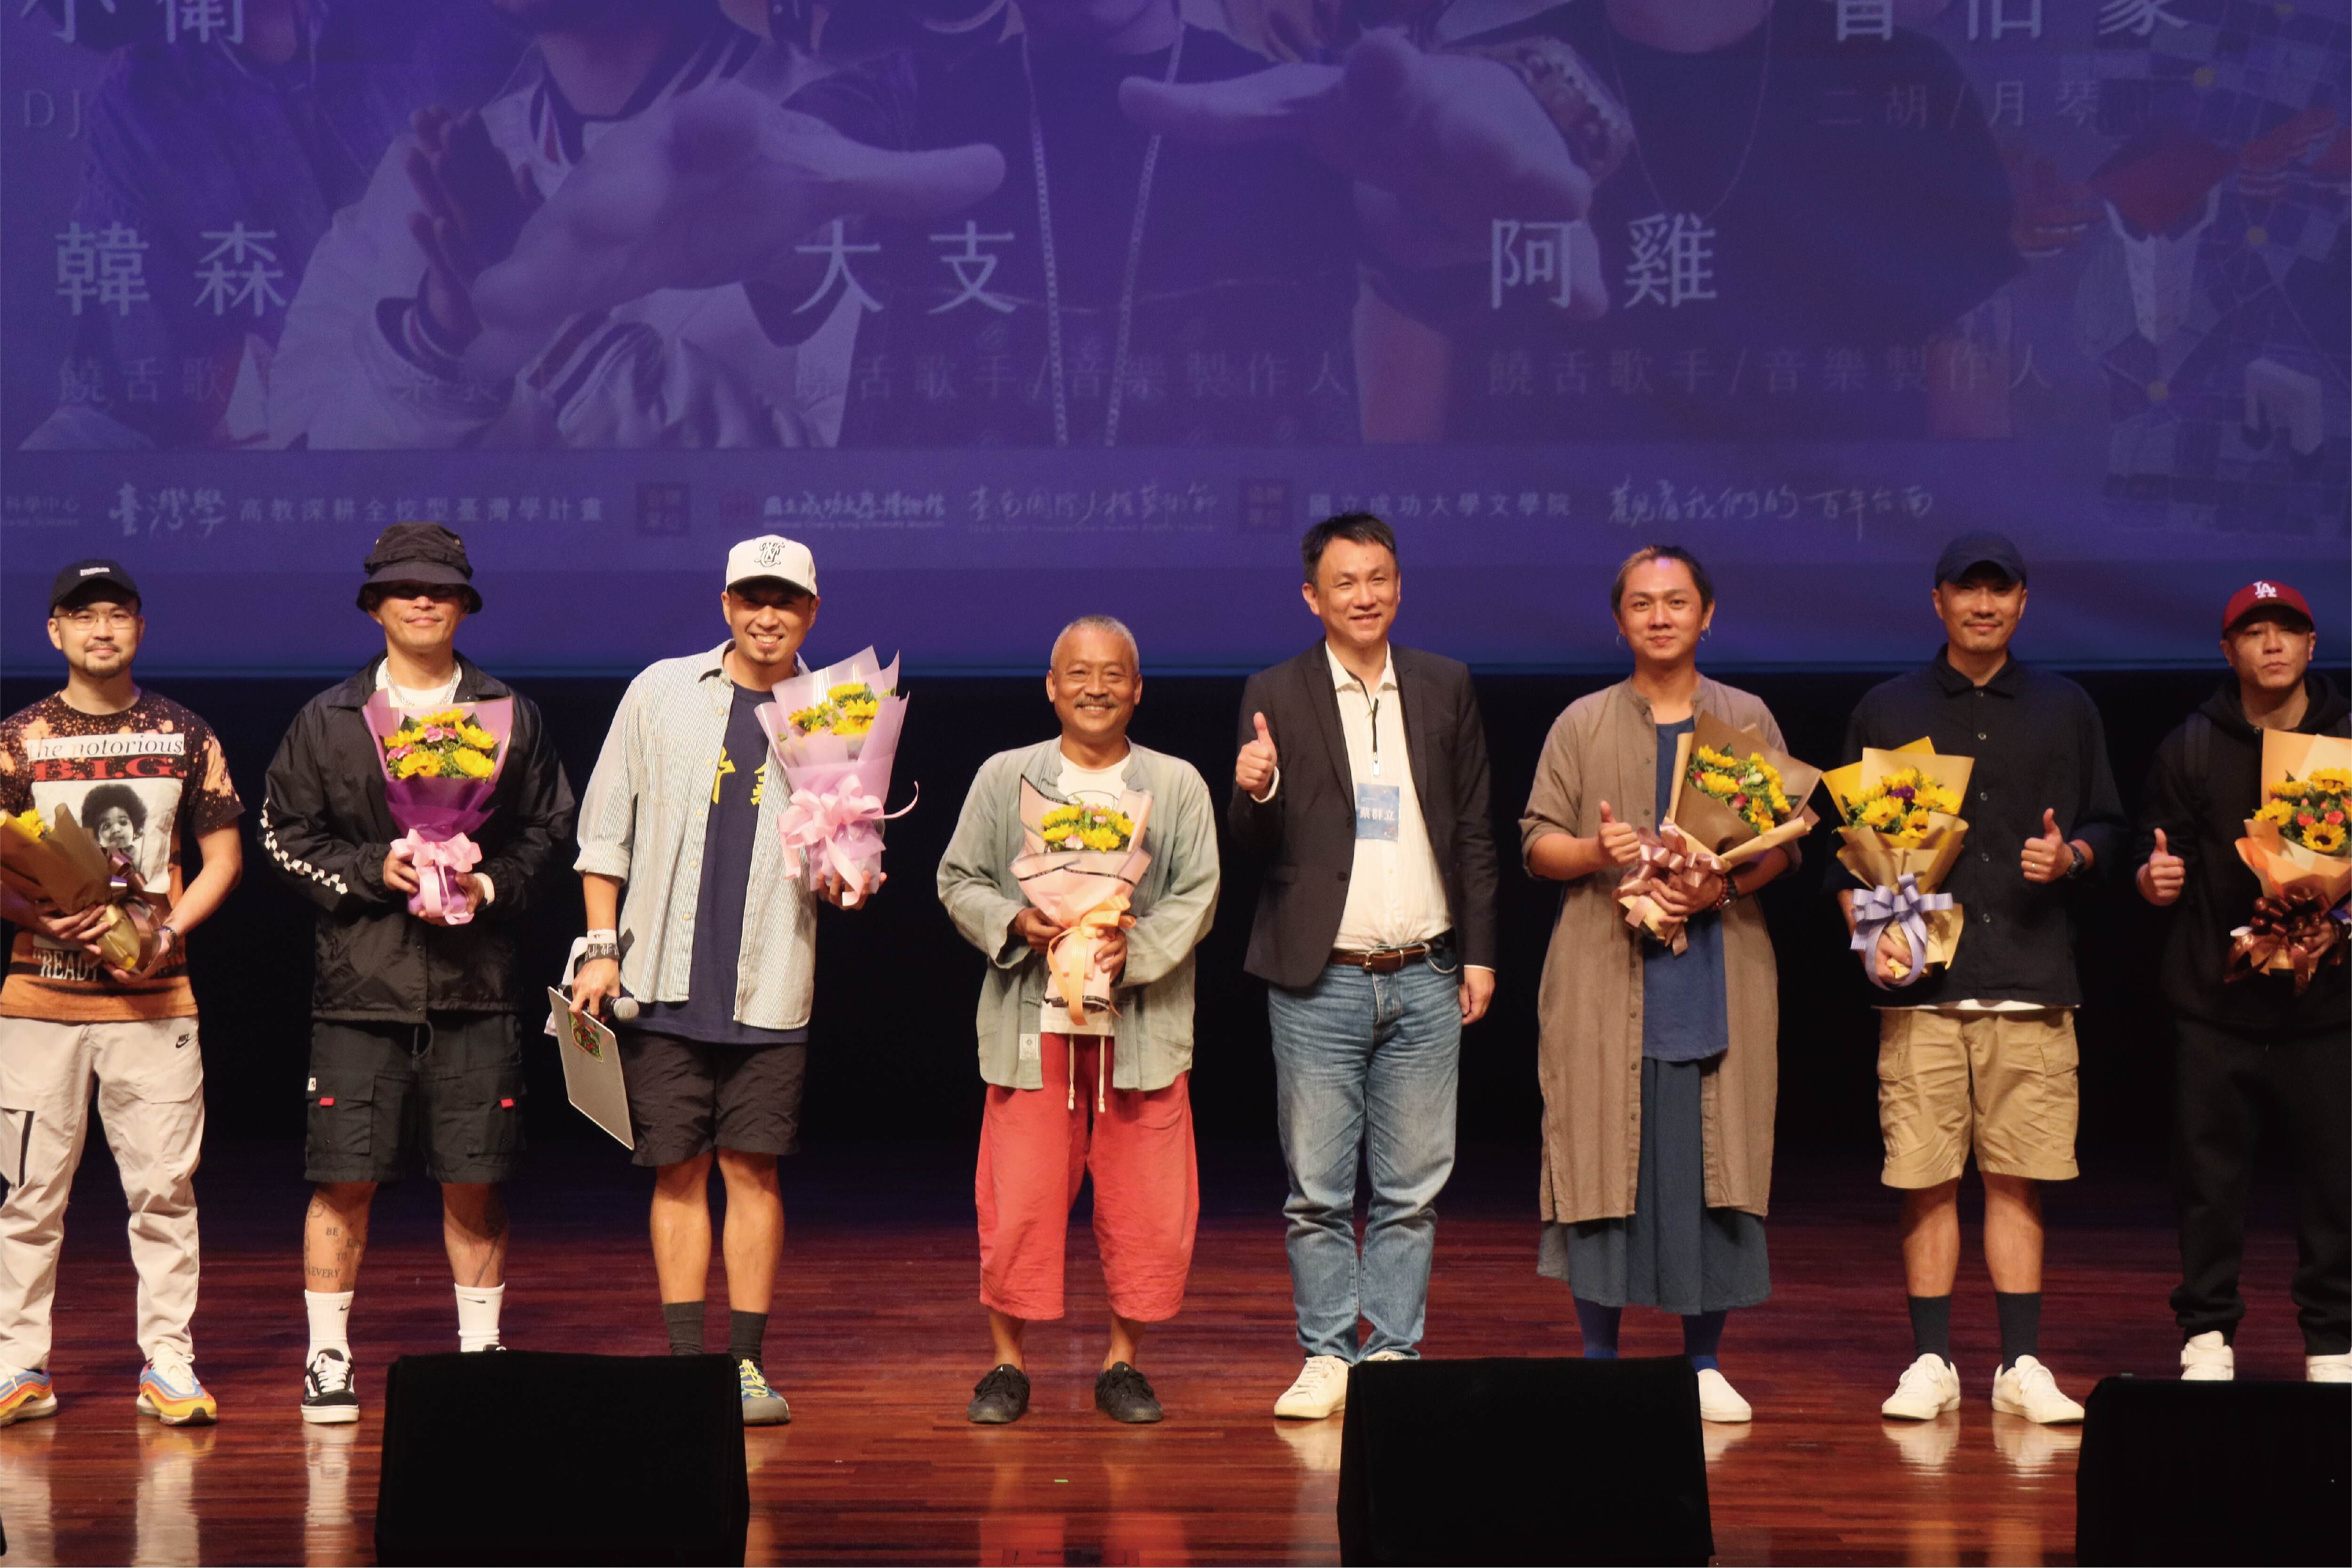 「臺南 400」演唱會　感受府城 400 年文化底蘊的活力與魅力